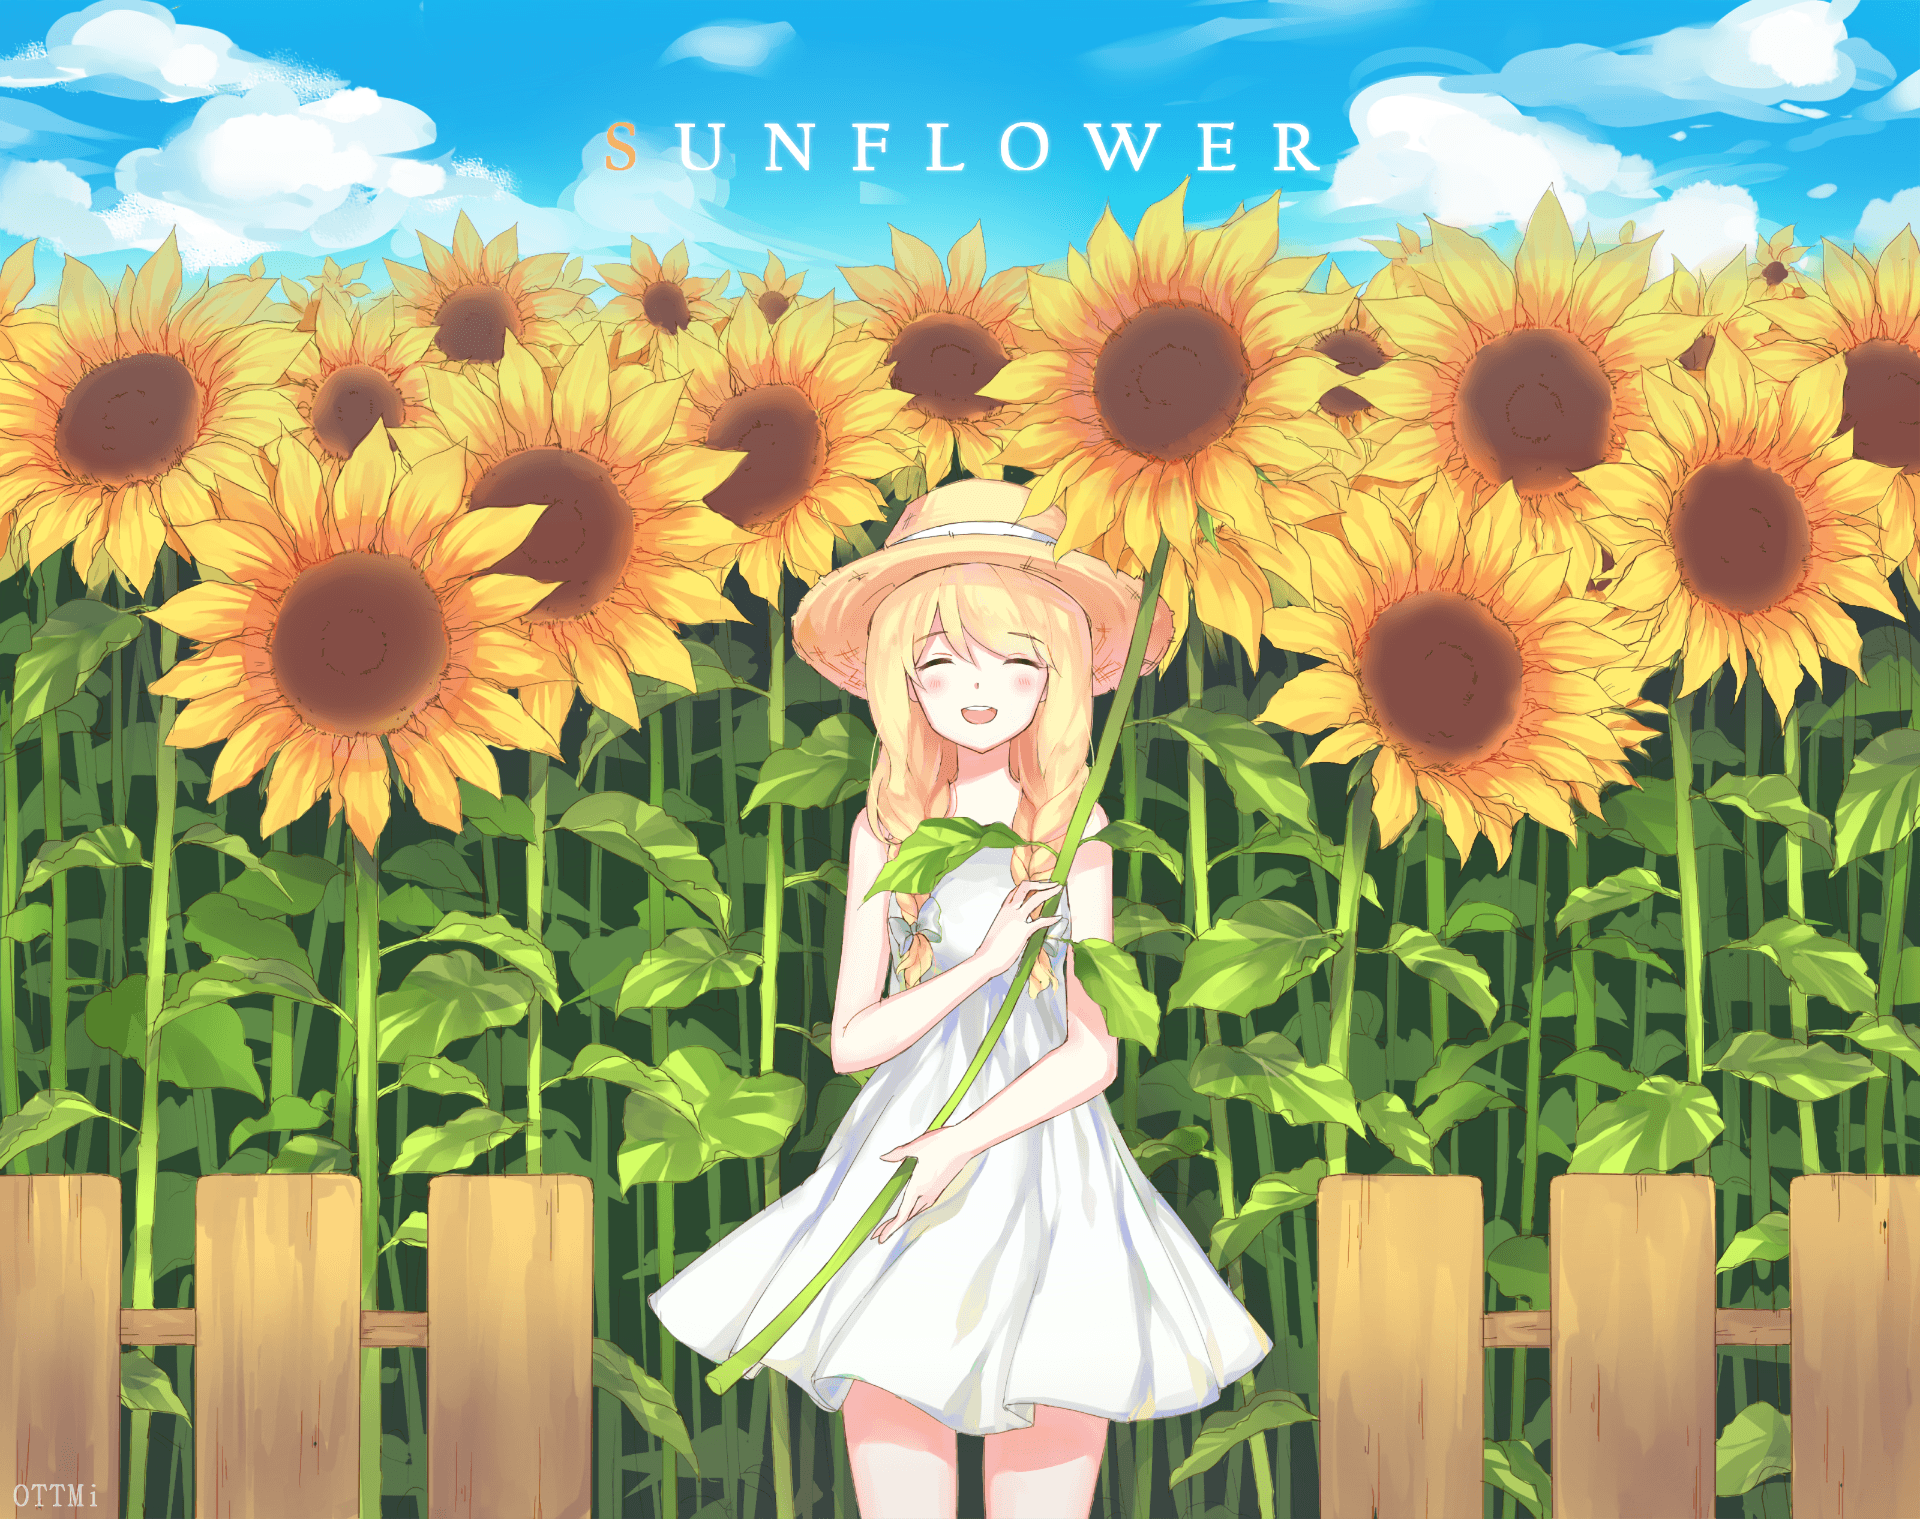 Sunflower Anime Wallpaper Free .wallpaperaccess.com